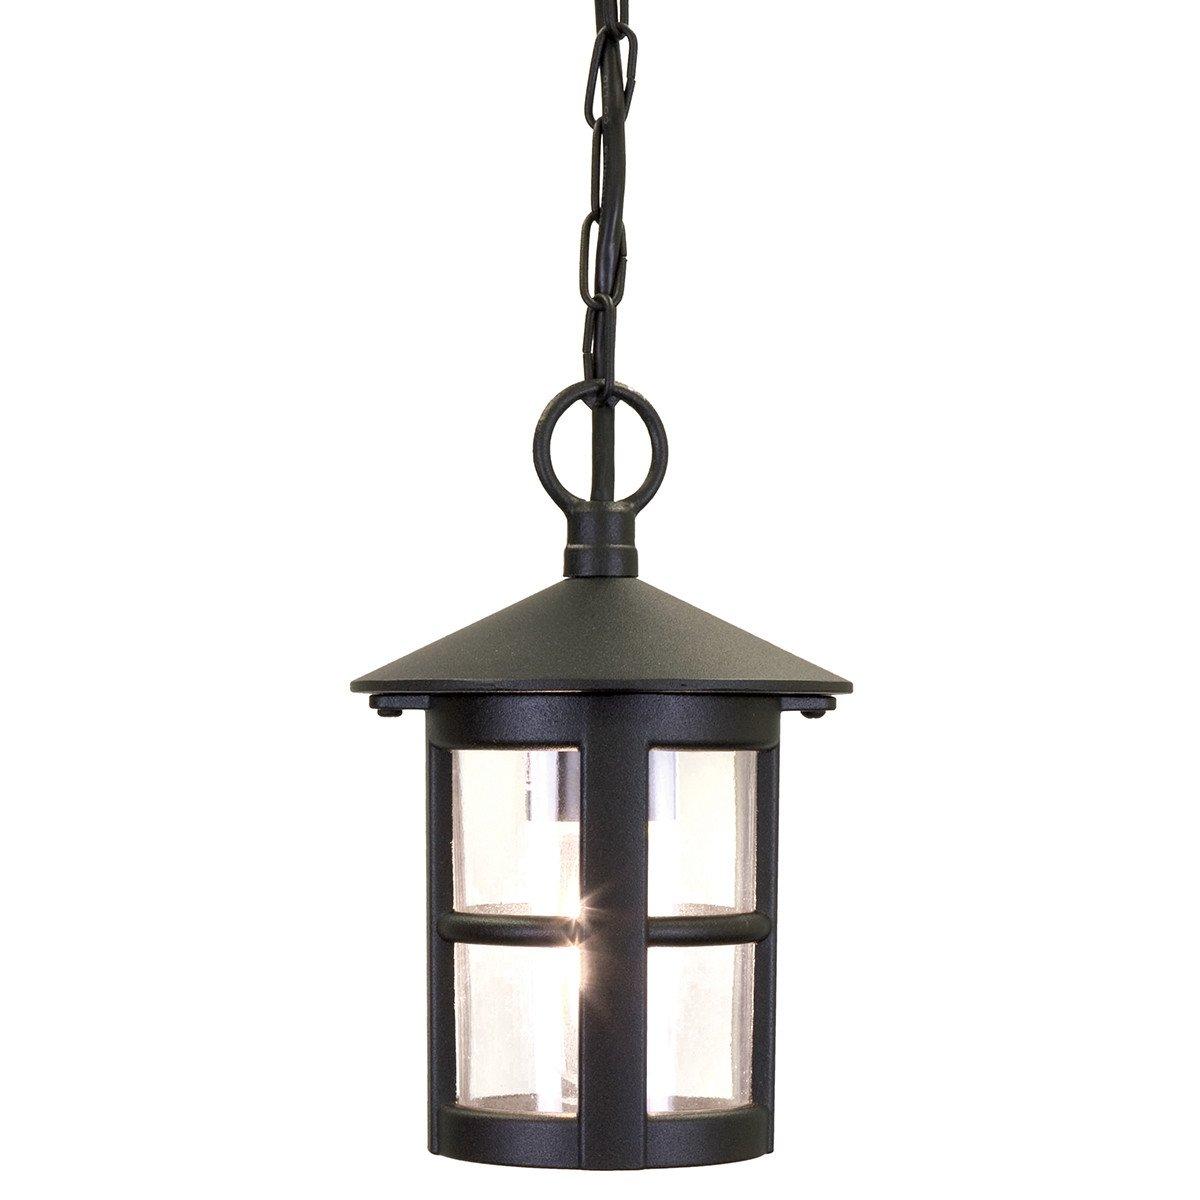 Hereford 1 Light Outdoor Ceiling Lantern Black IP43 E27